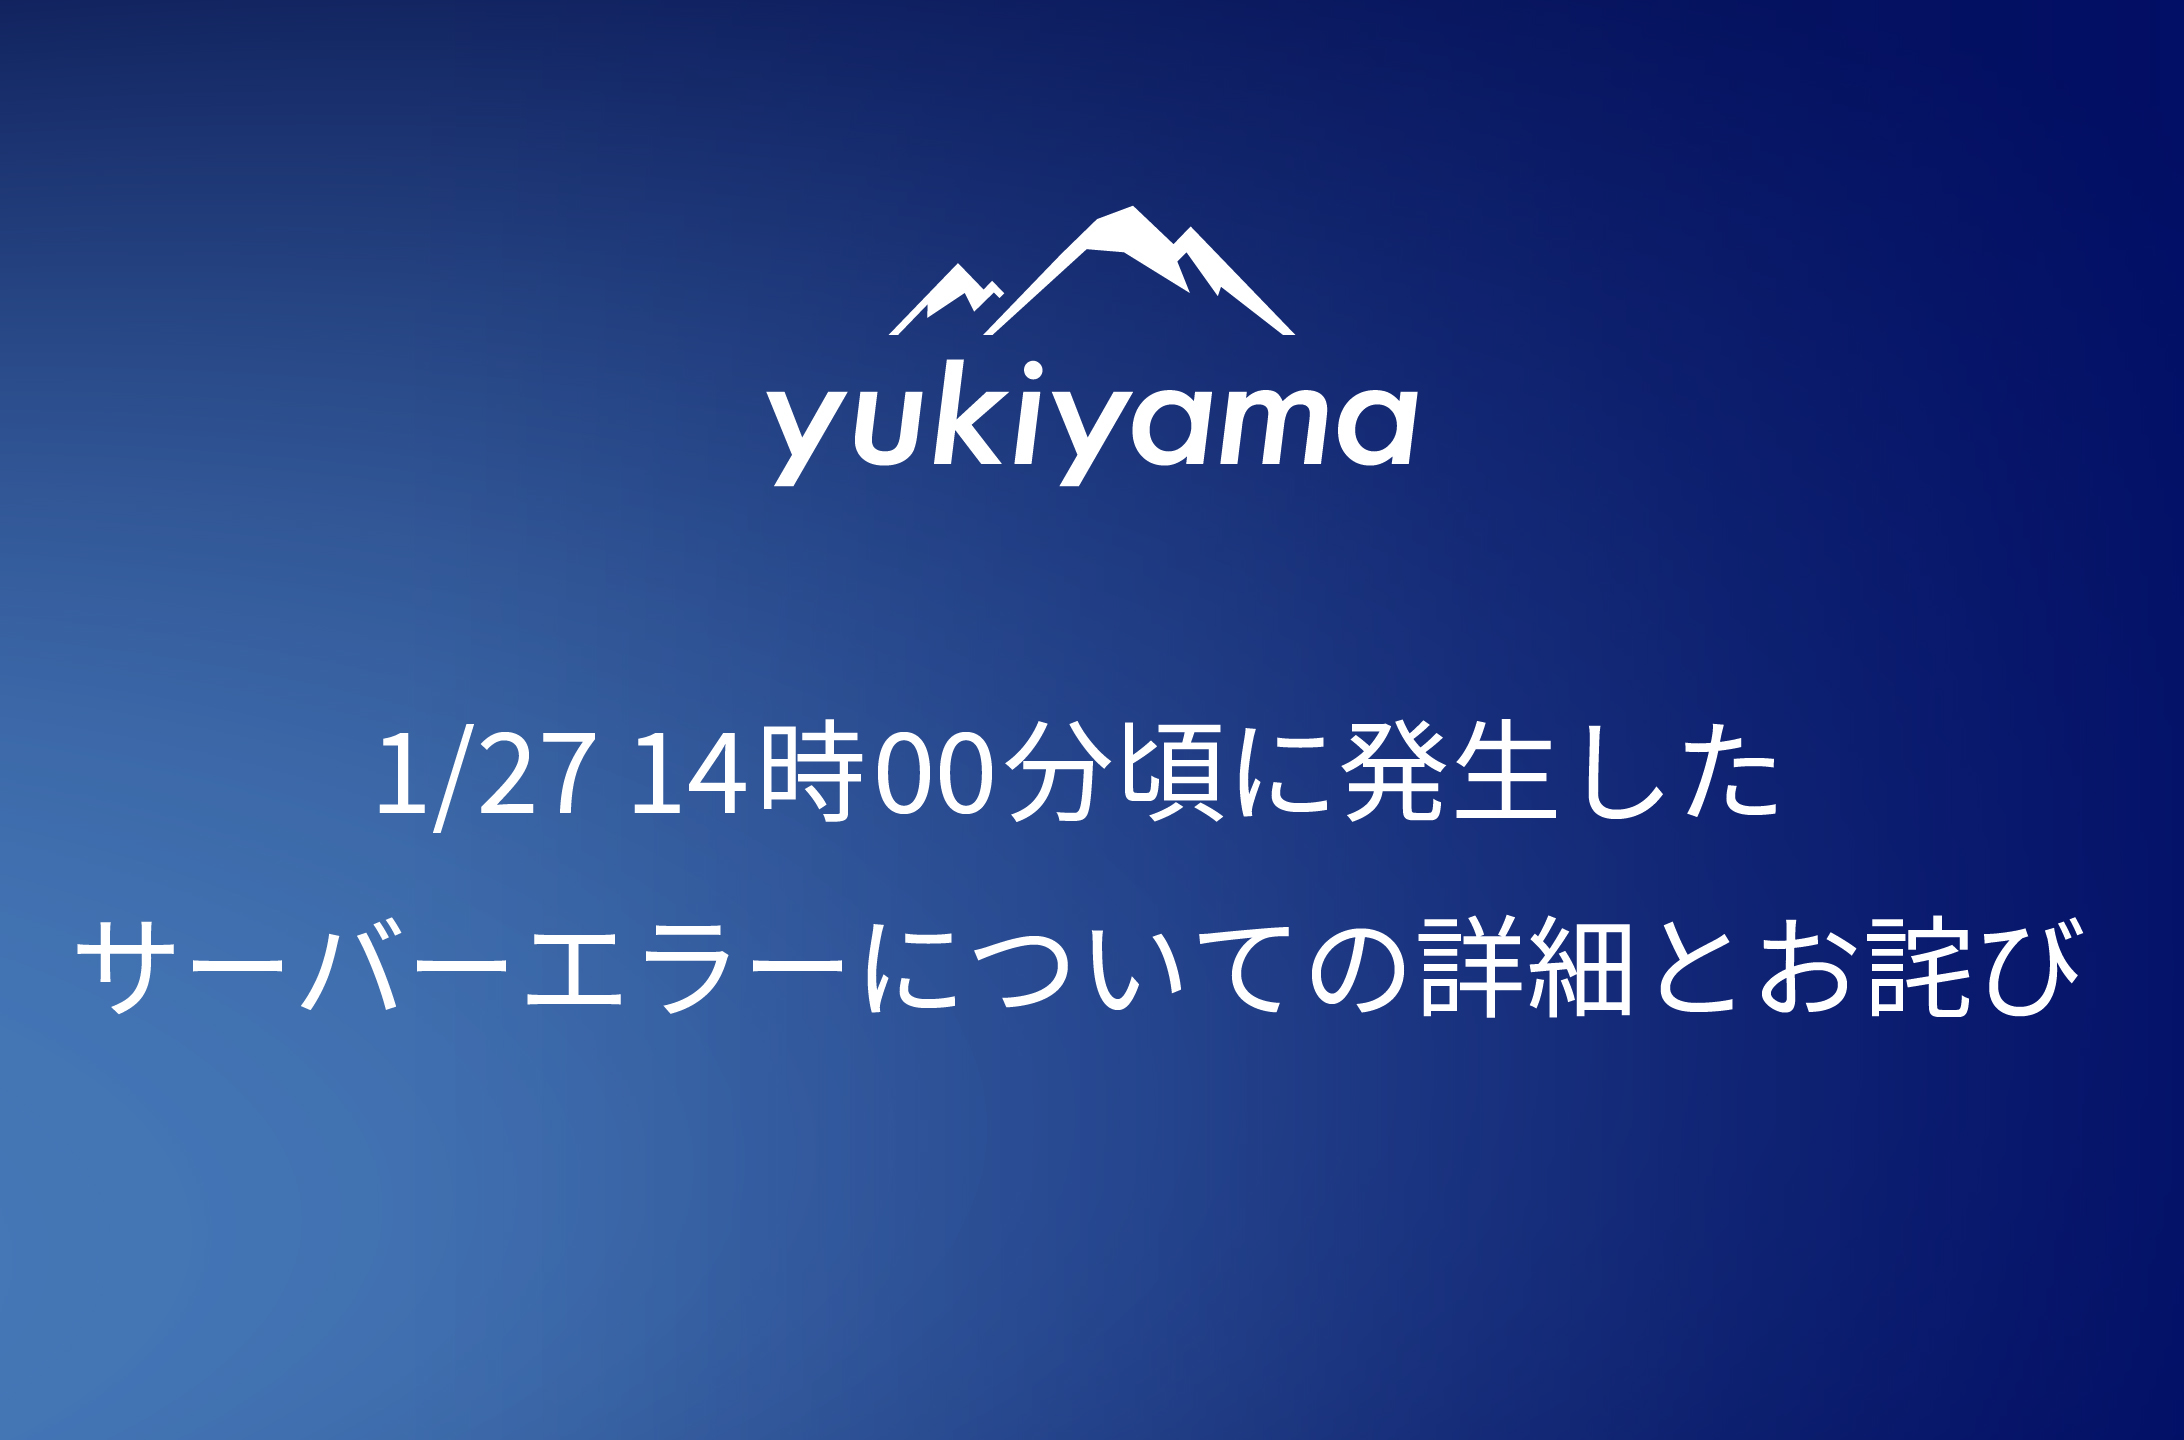 【yukiyamaアプリ】1/27 14時00分頃に発生したサーバーエラーについての詳細とお詫び